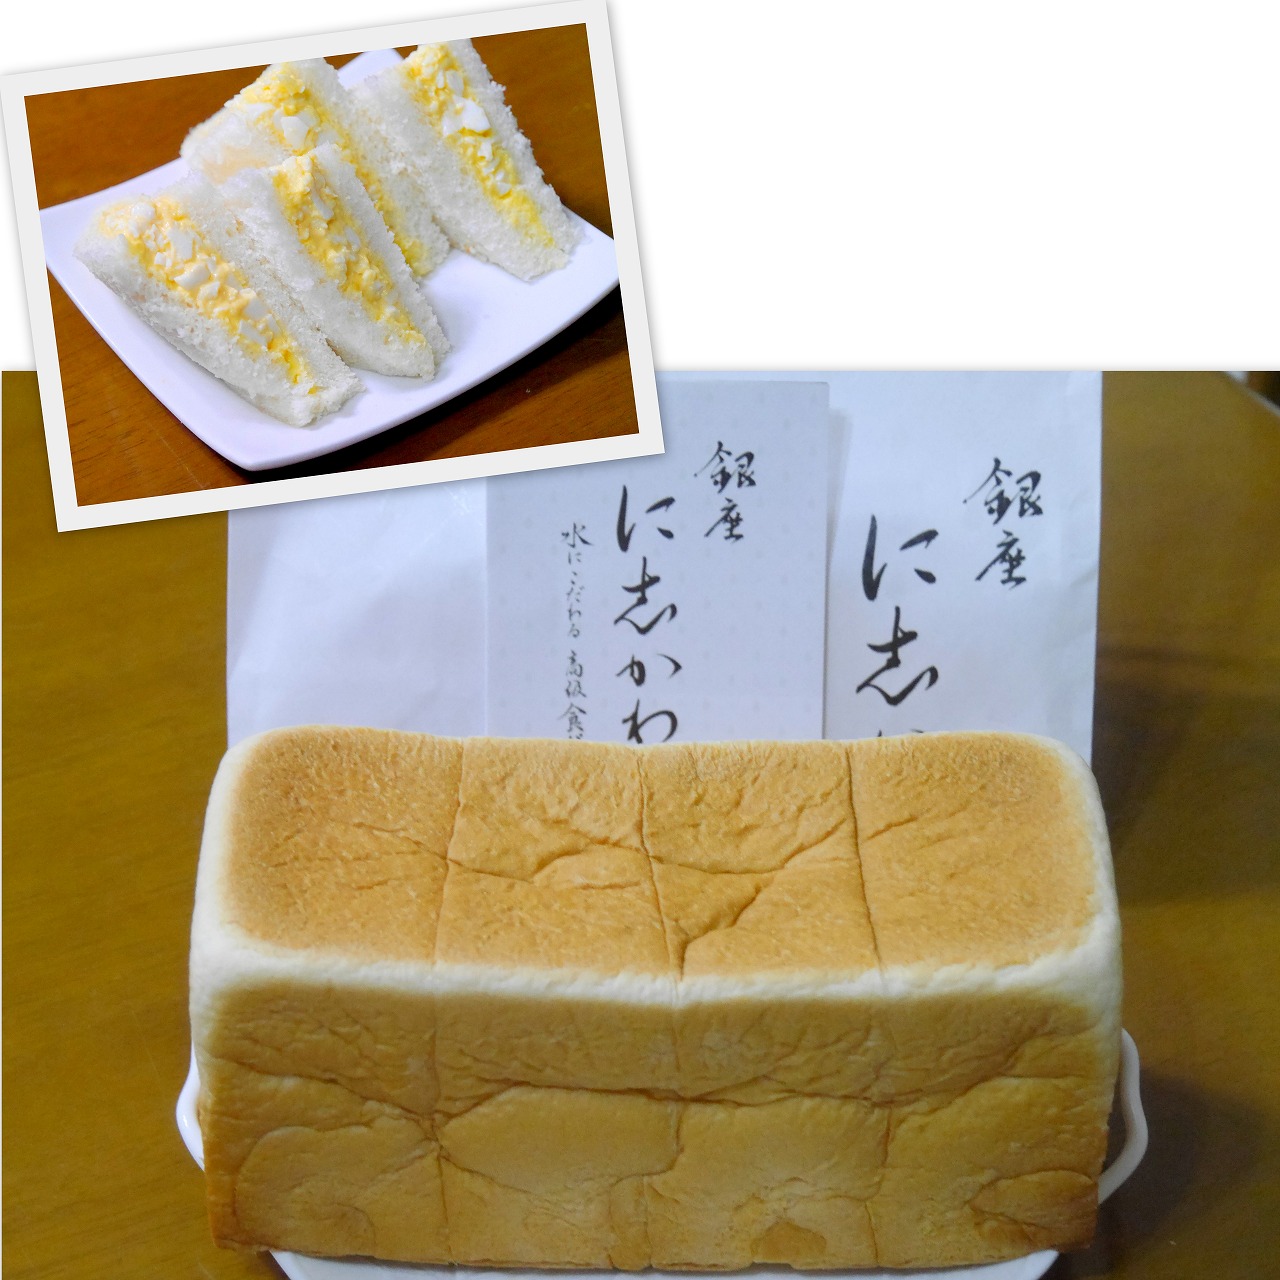 2021-07-04銀座に志かわ食パン.jpg